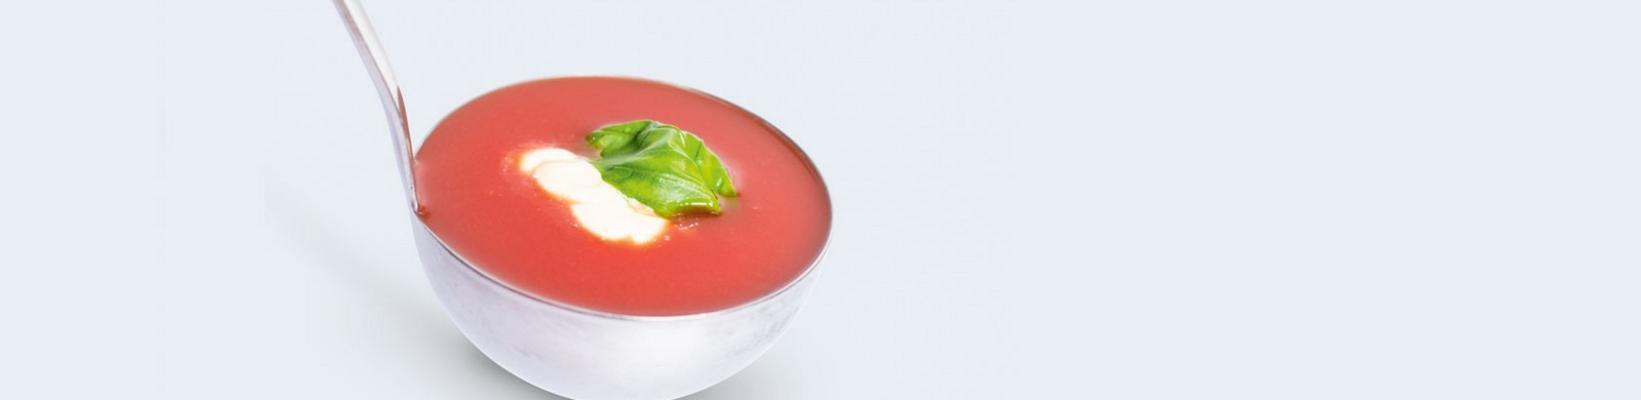 sweet tomato soup with bastogne cake